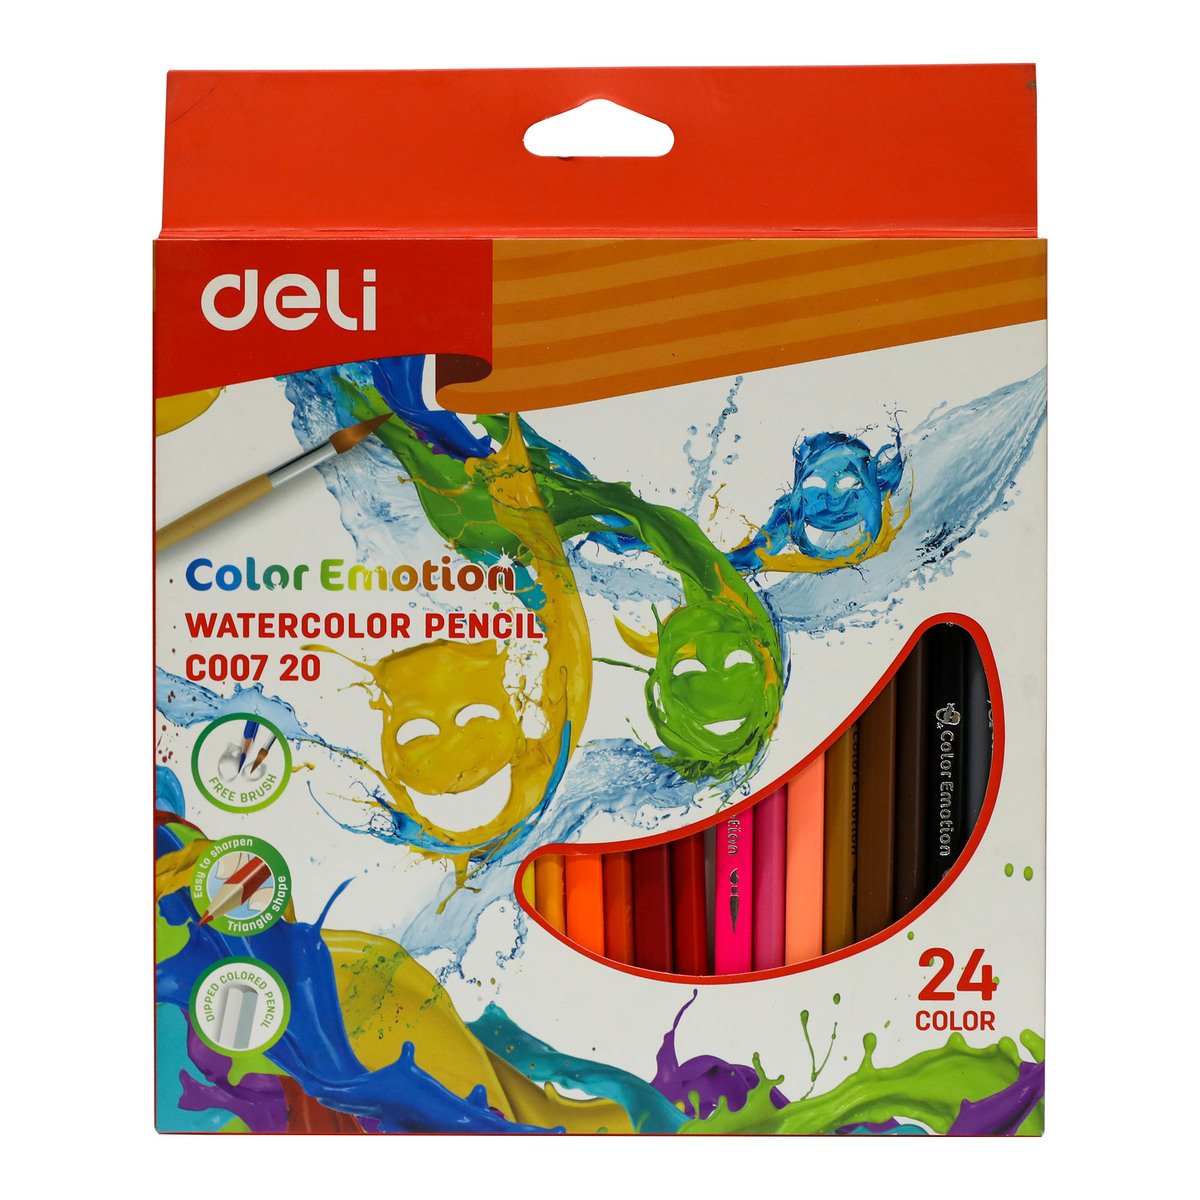 Deli Color Emotion Water Color Pencil C00720 24Pcs